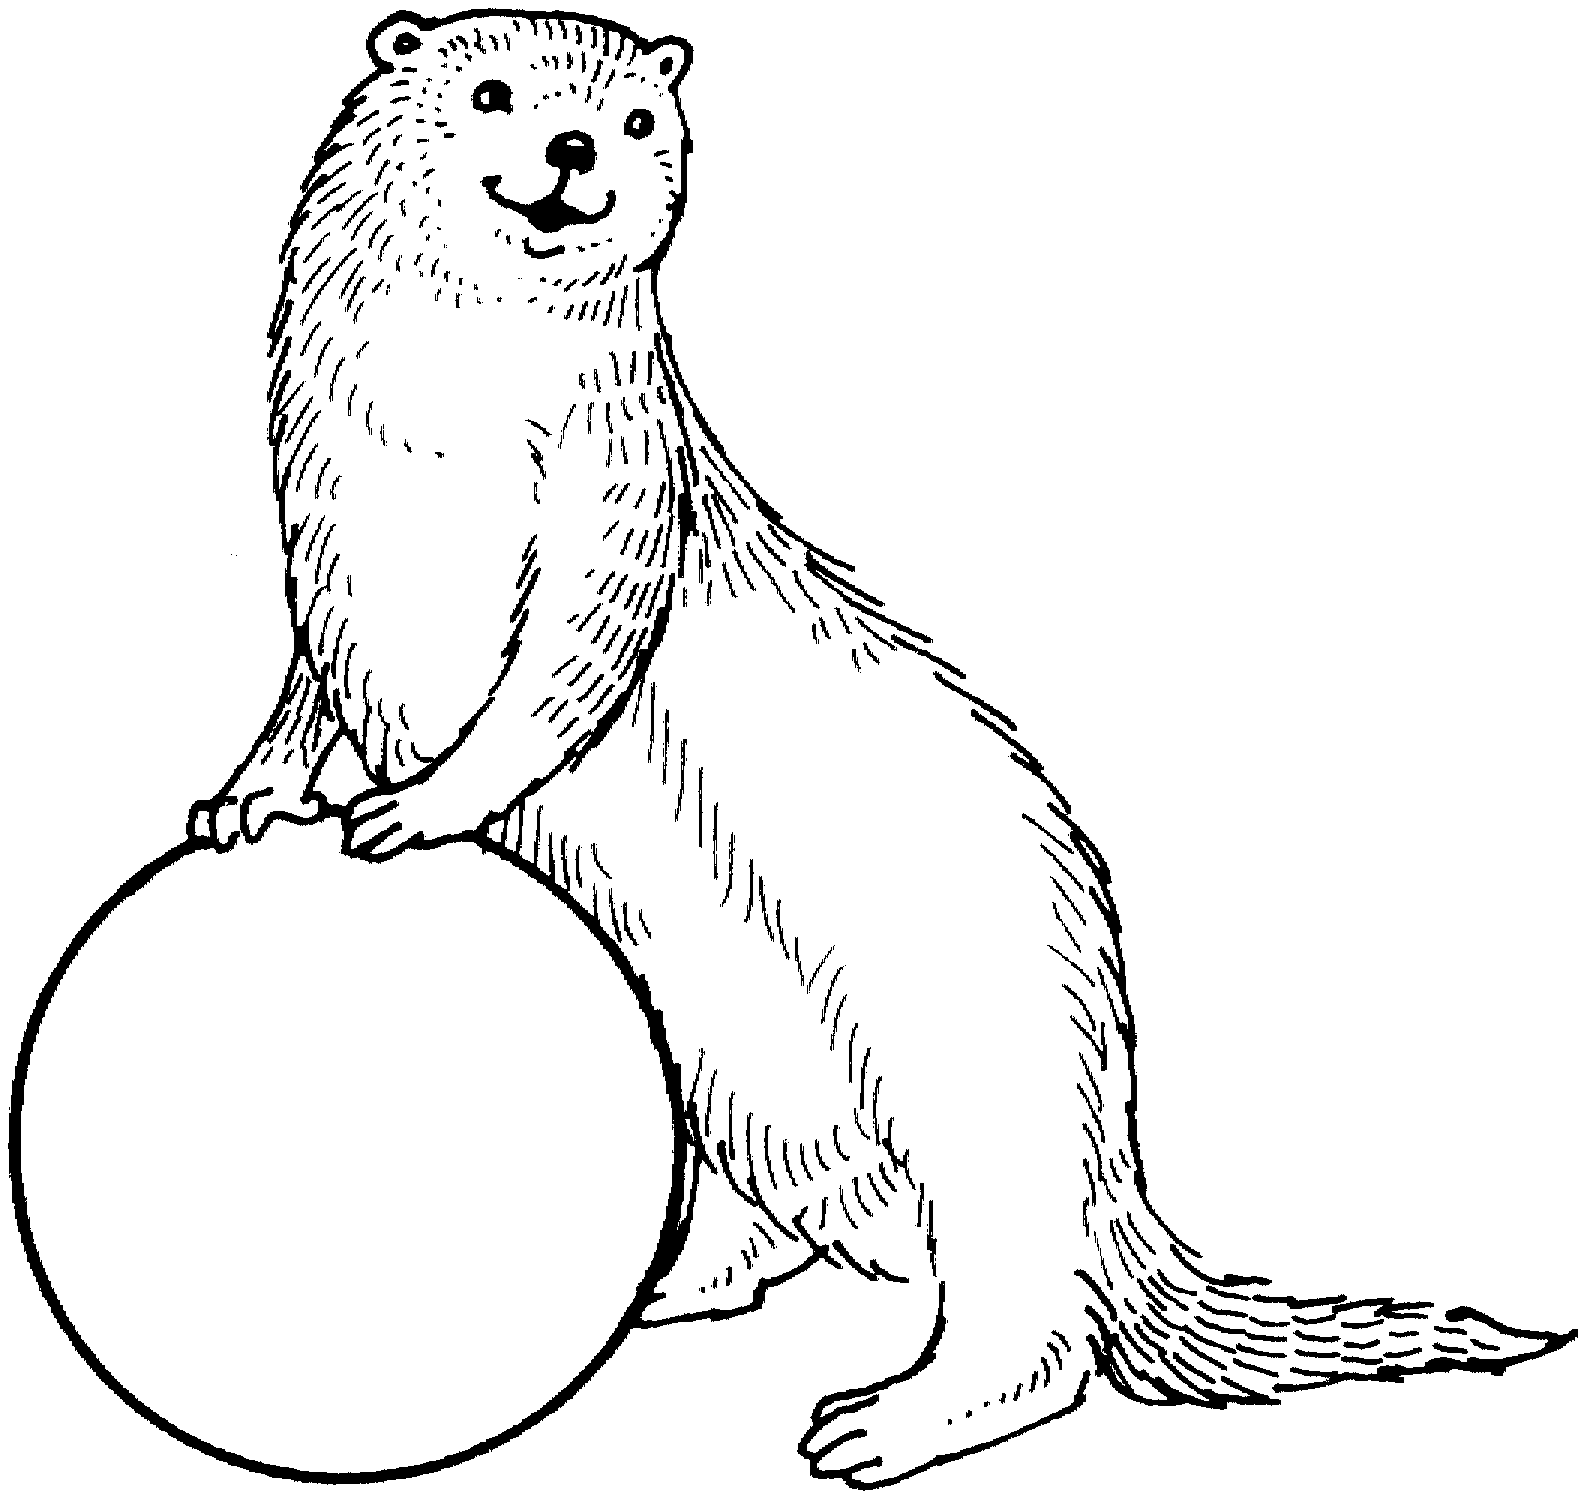 Otter clipart outline.